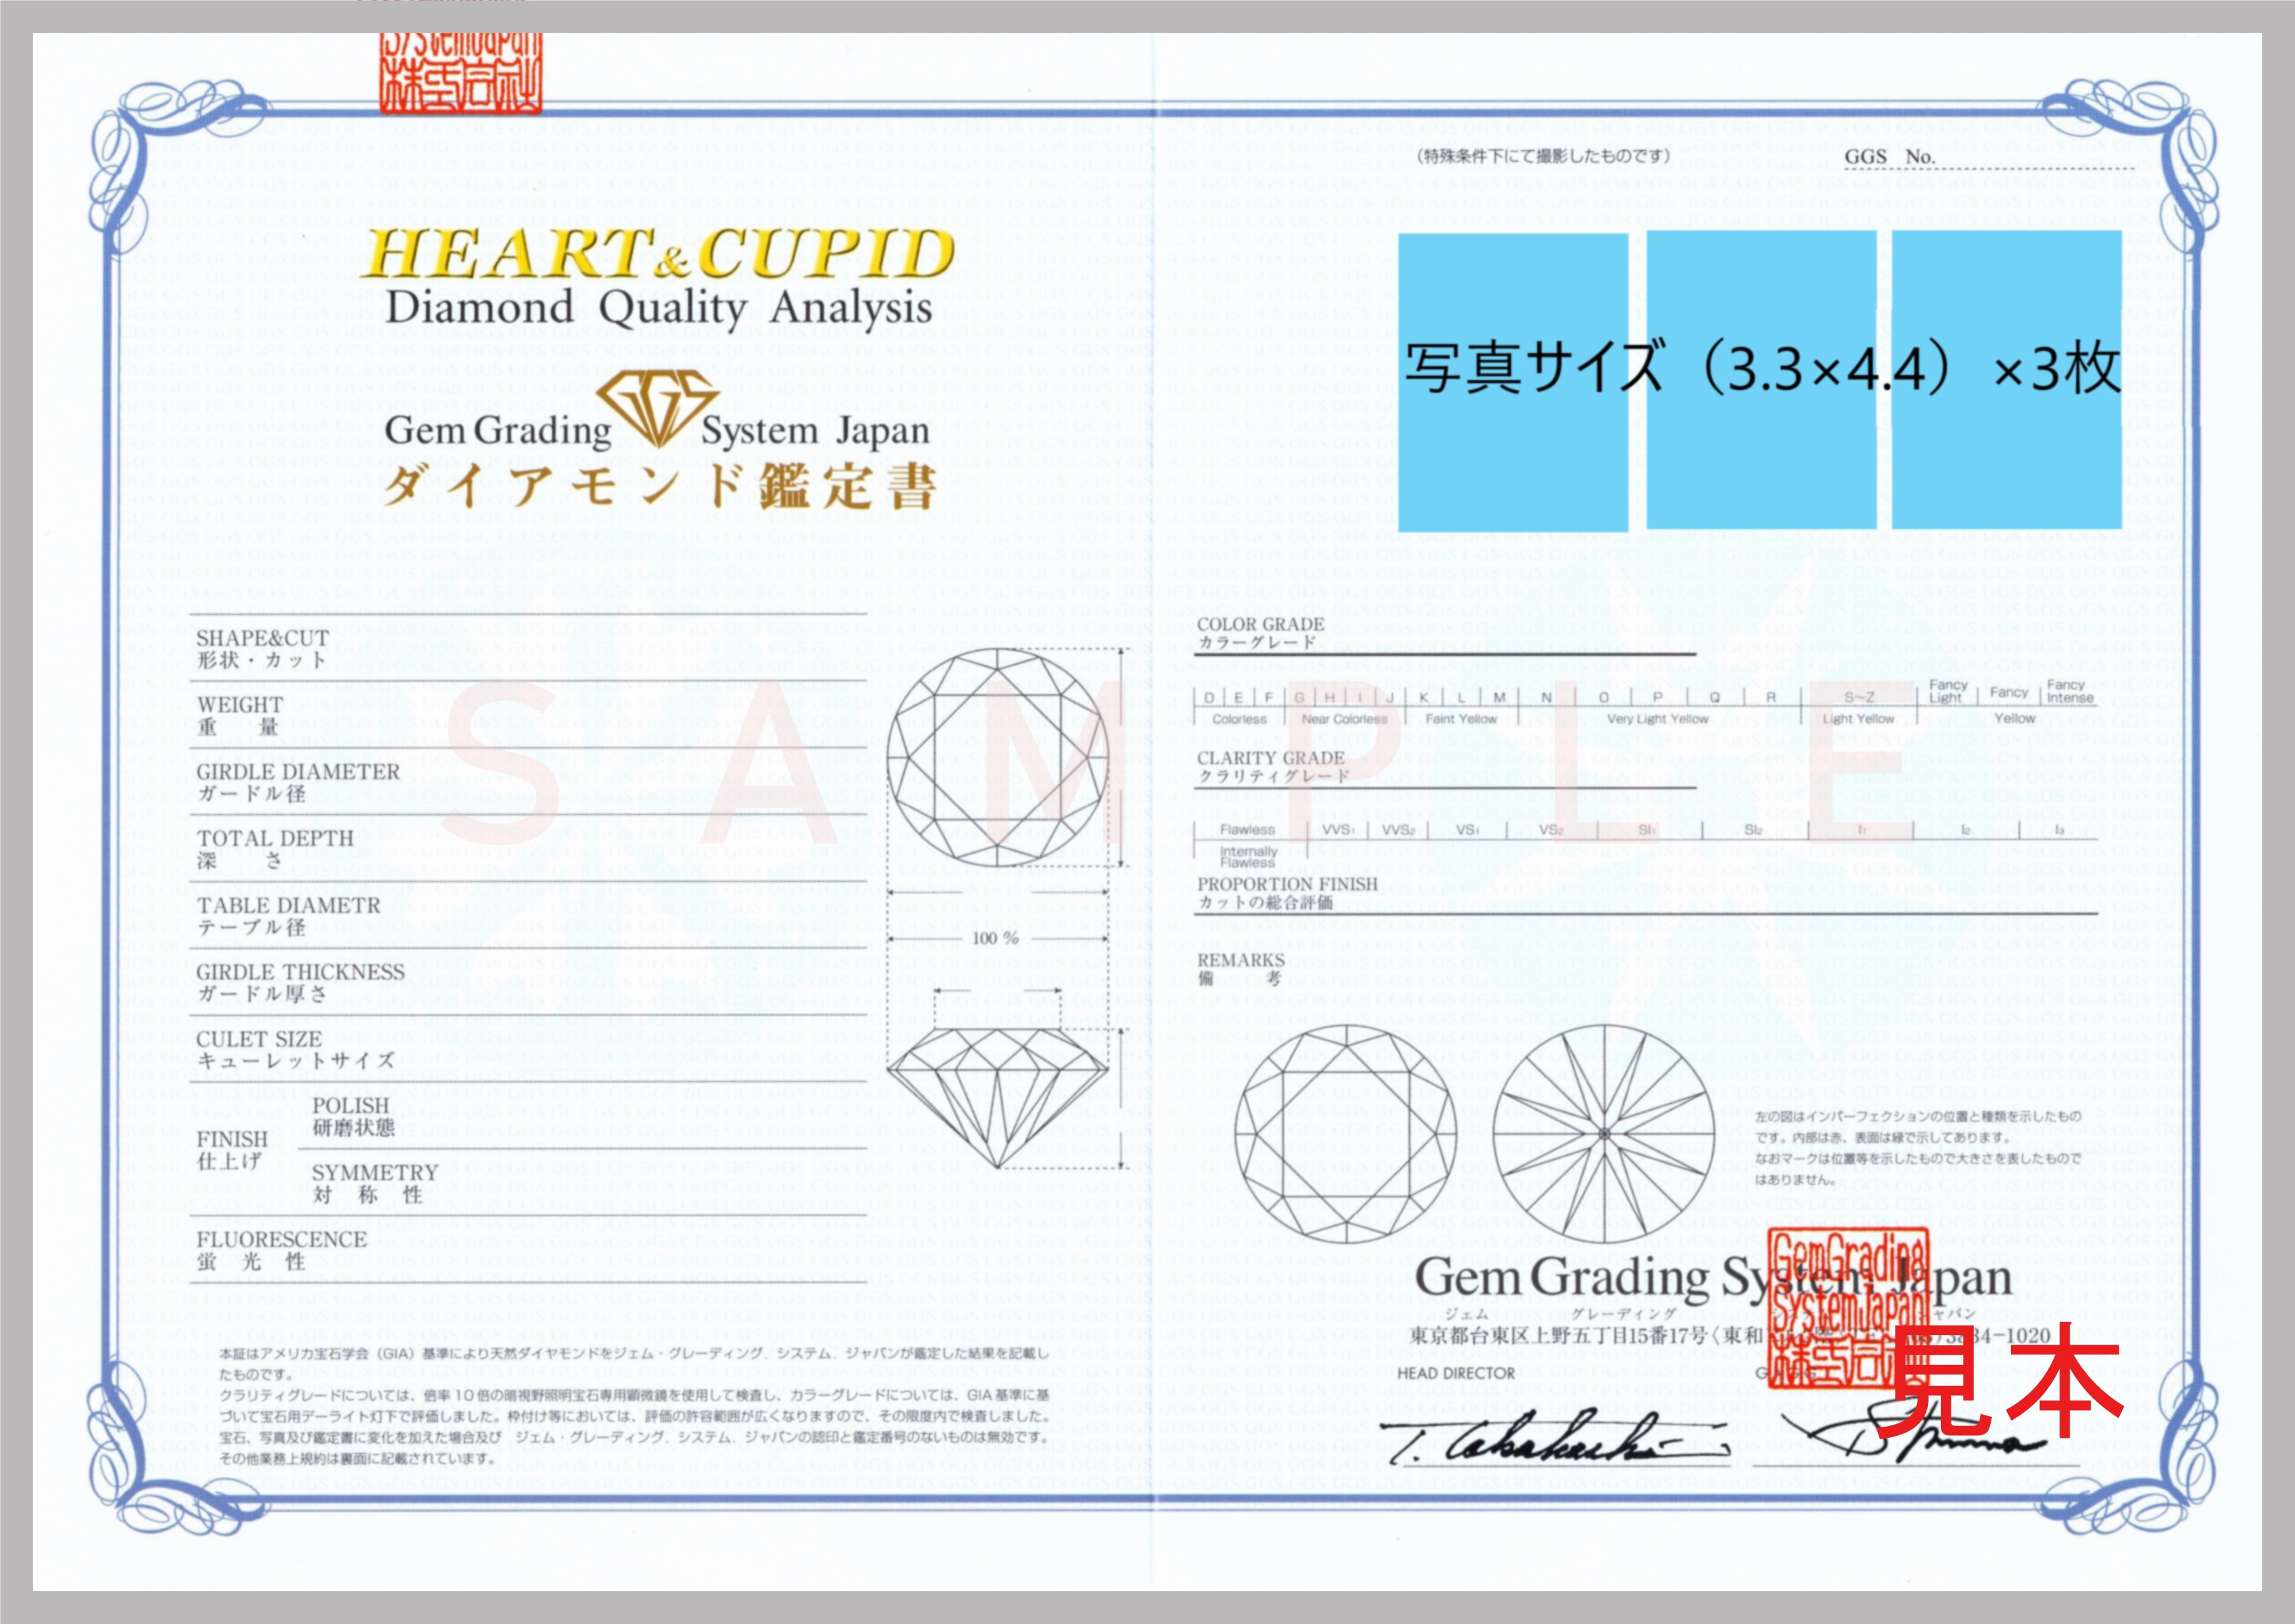 鑑 定 書 | Gem Grading System Japan